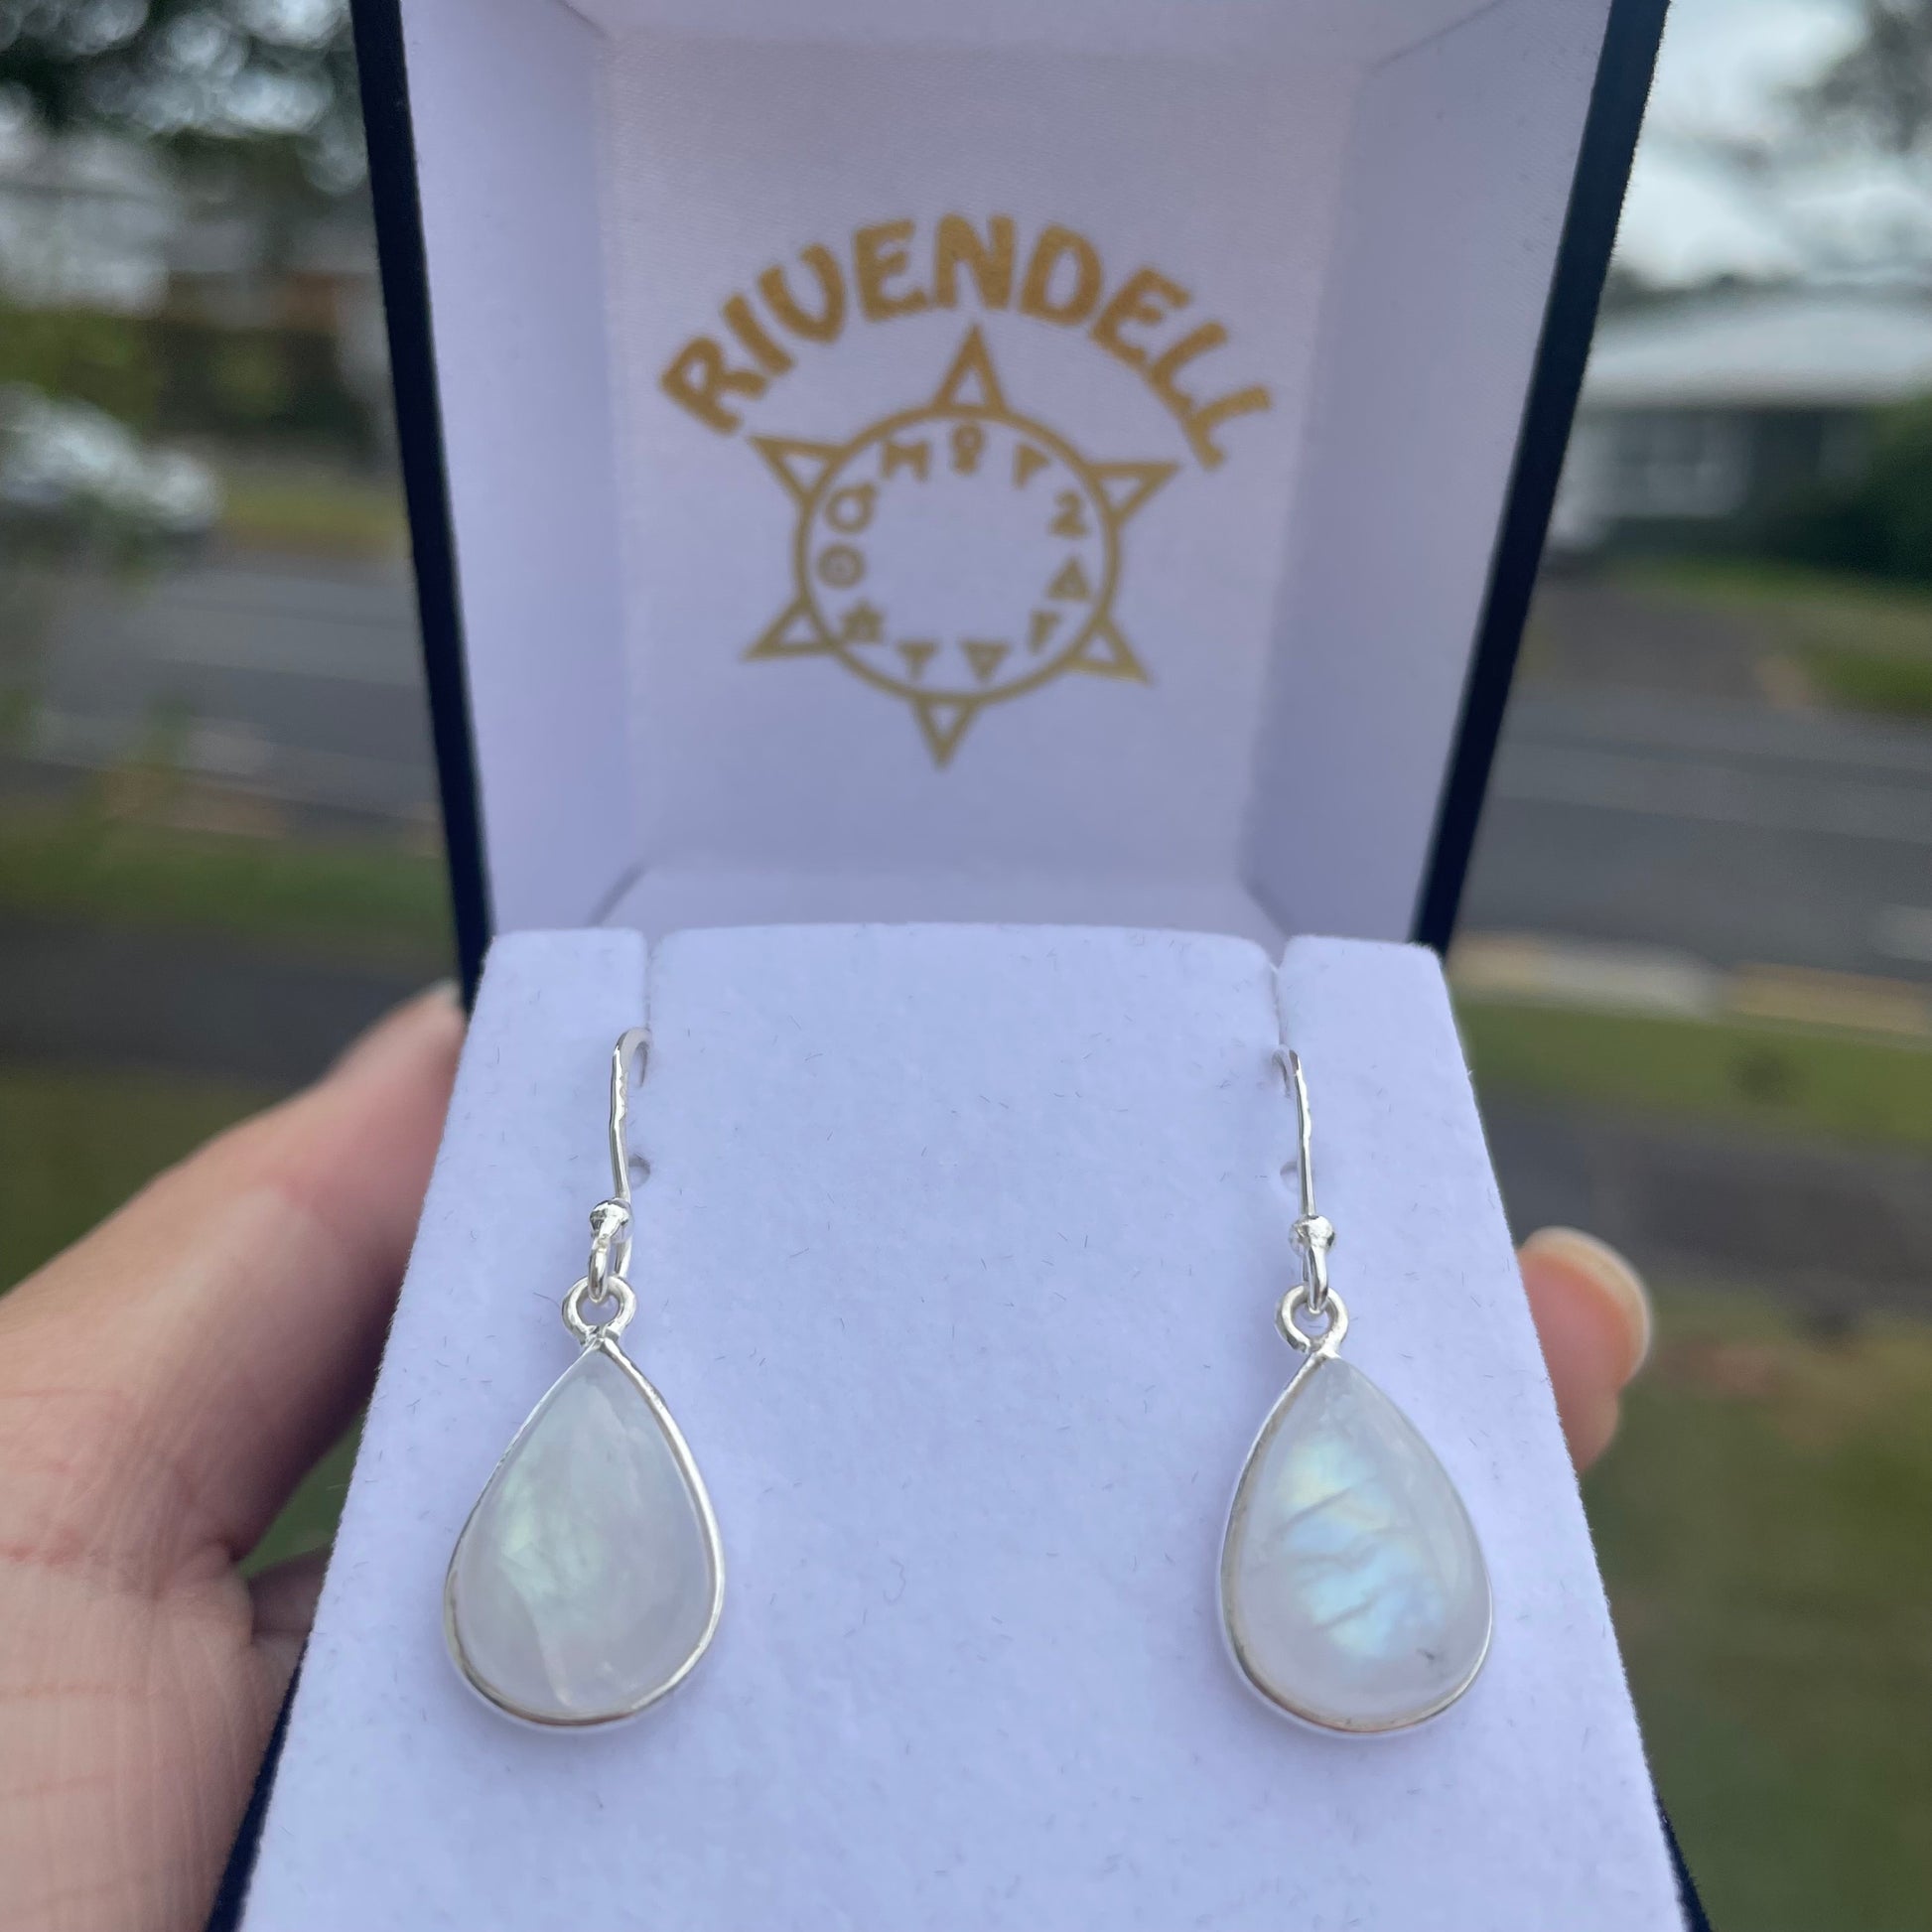 Teardrop Moonstone Sterling Silver Dangle Earrings - Rivendell Shop